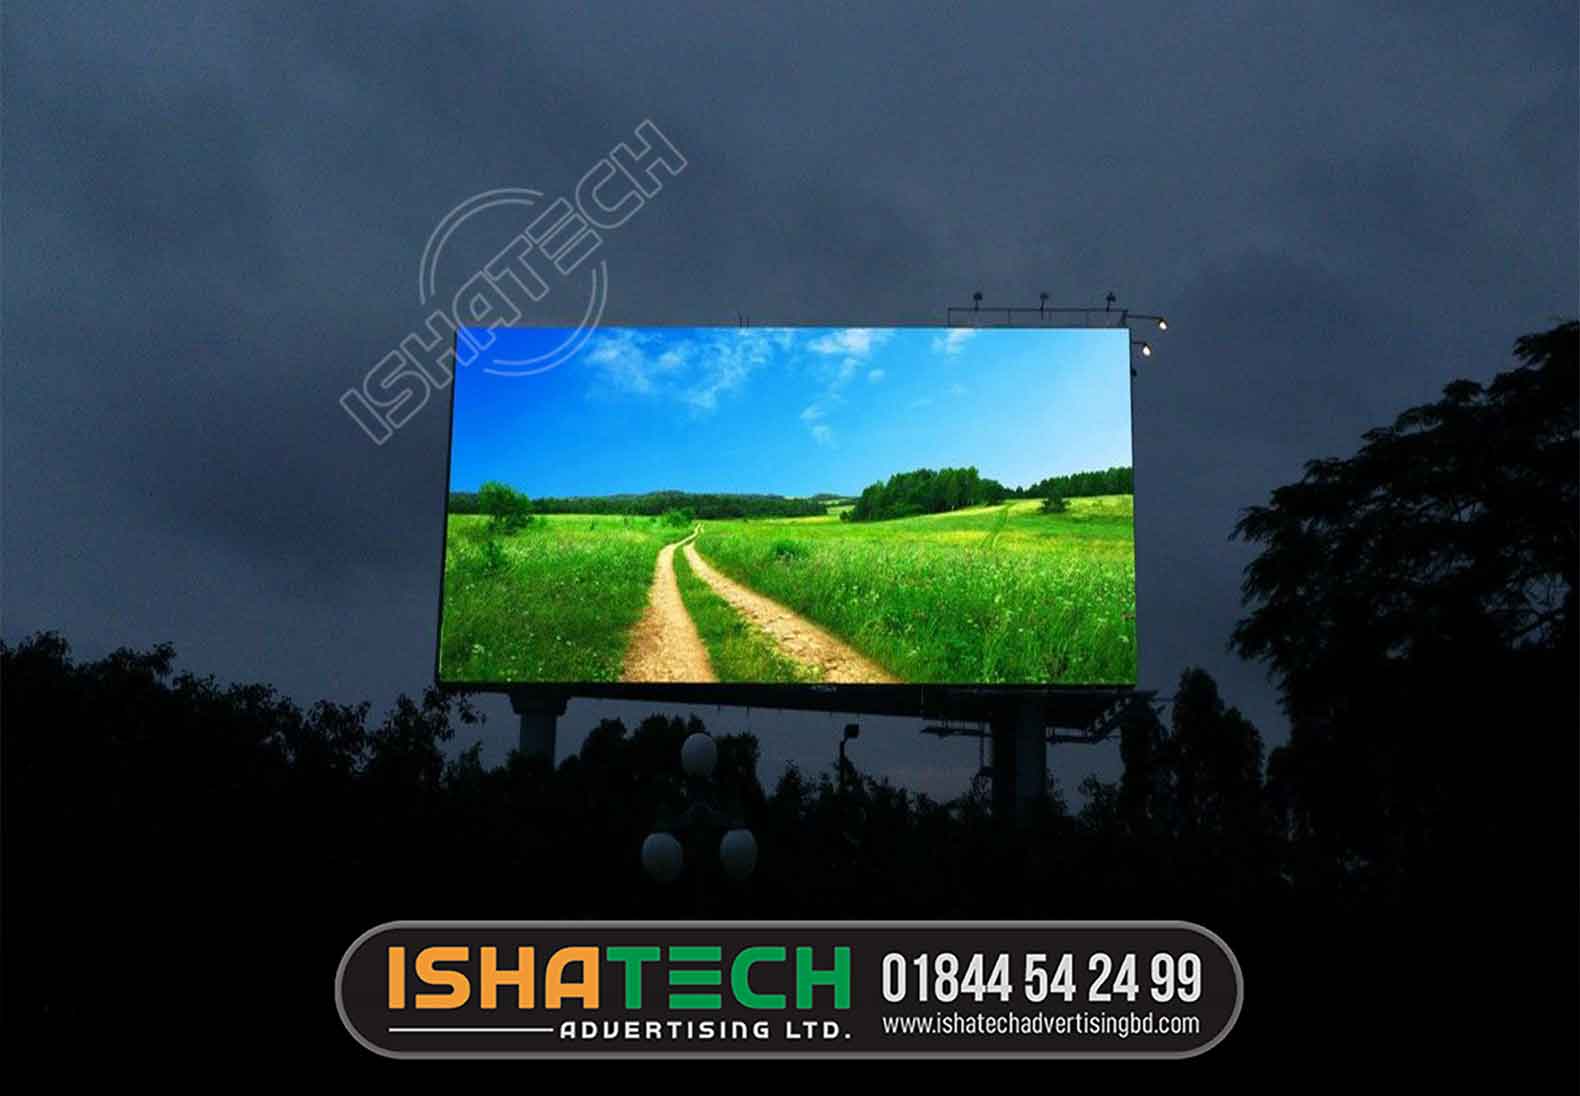 Outdoor Indoor Led Display Screen, Digital Led Billboard Board provider company in Dhaka BD